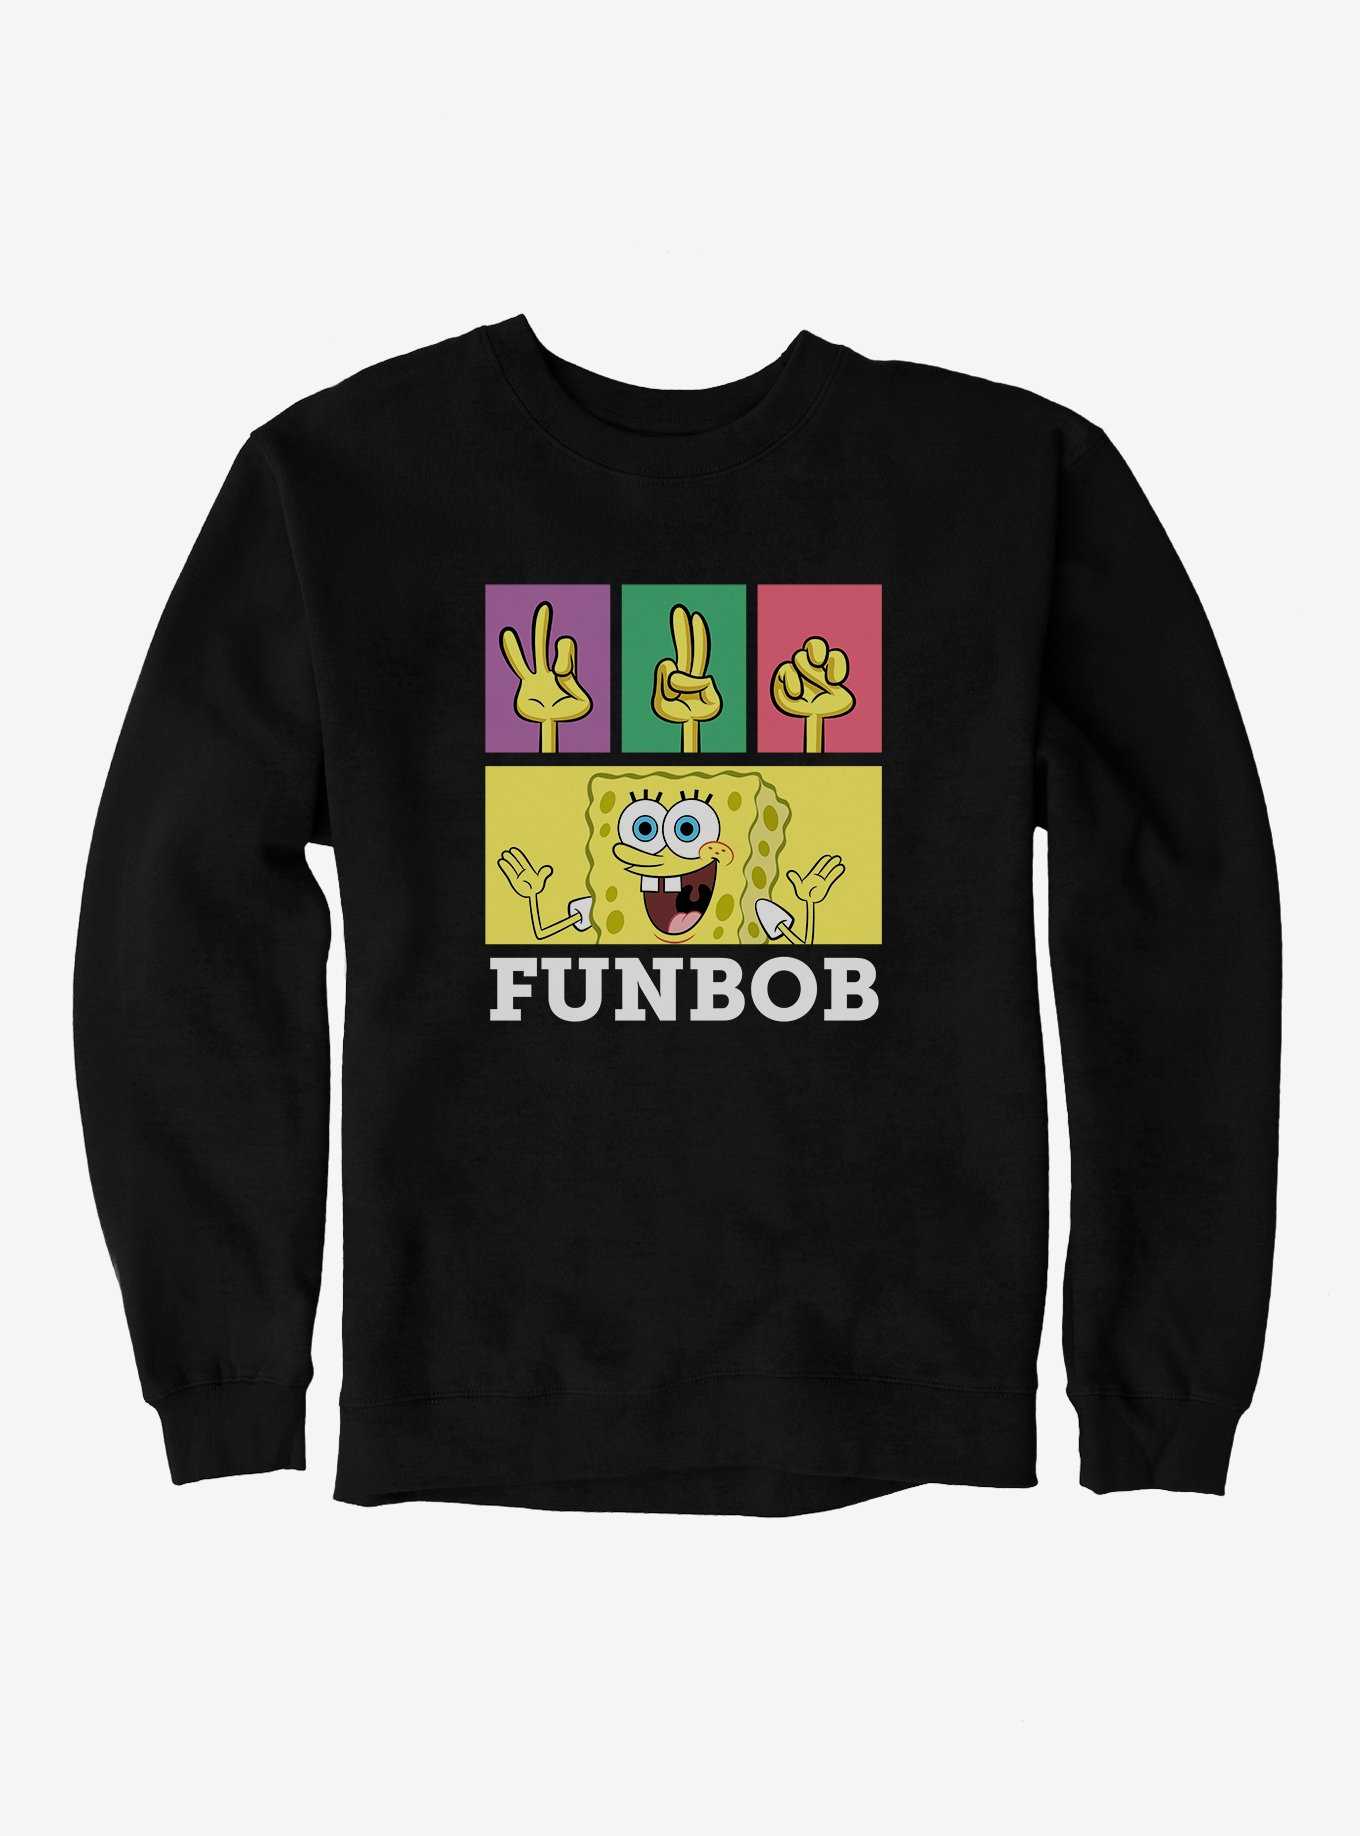 SpongeBob SquarePants FUNBob Sign Language Sweatshirt, , hi-res